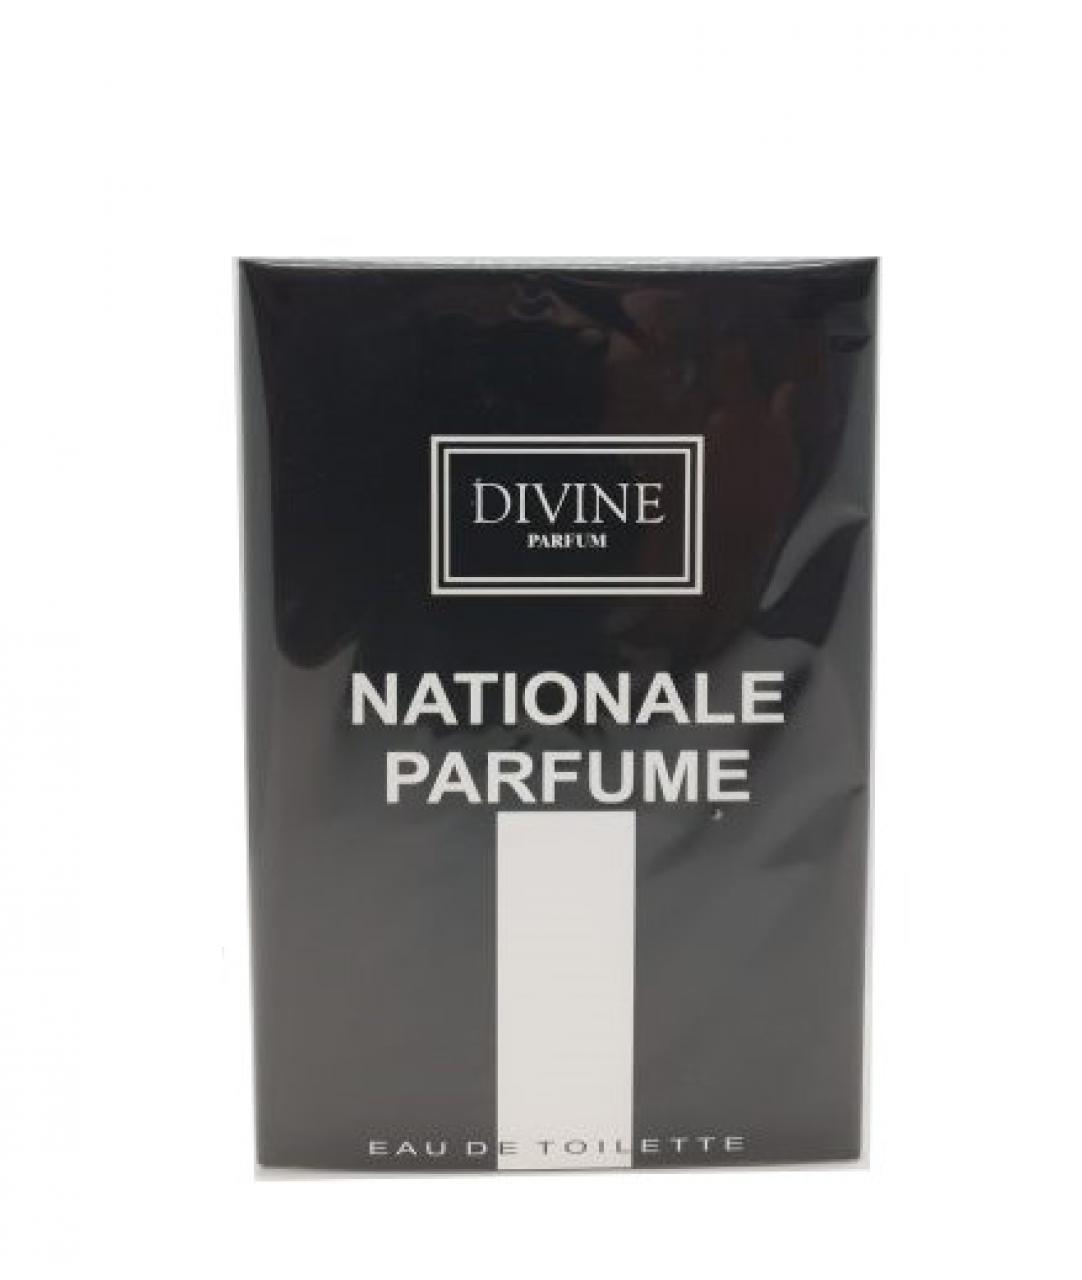 DIVINE PARFUM – NATIONALE PARFUME